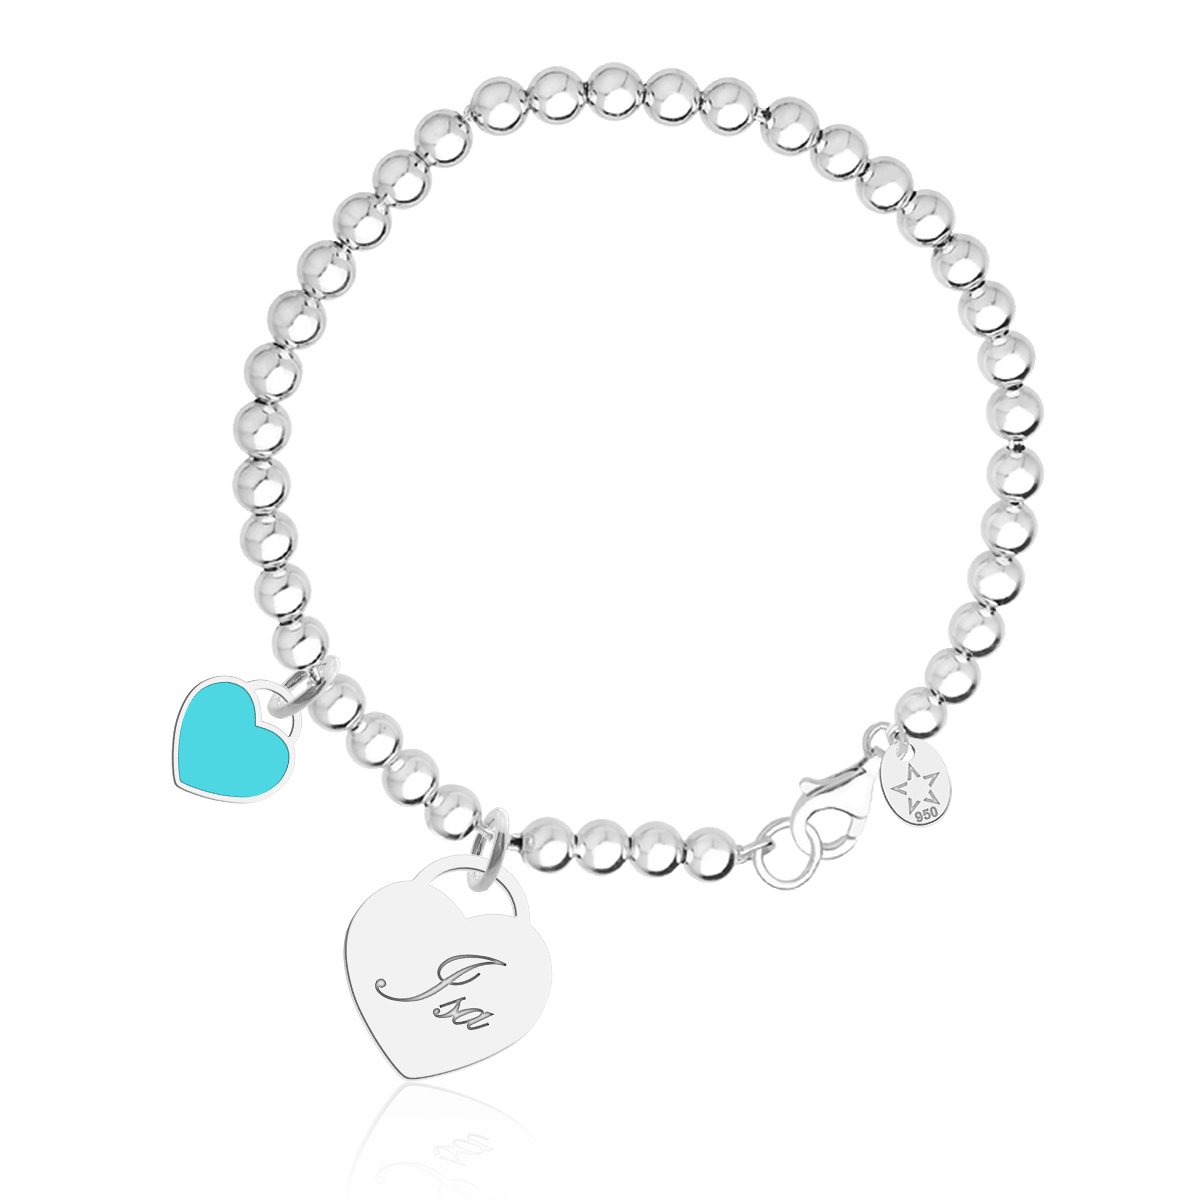 Bracelete Bola Texto e Coração Azul Turquesa Personalizado Dupla Face Coração em Prata